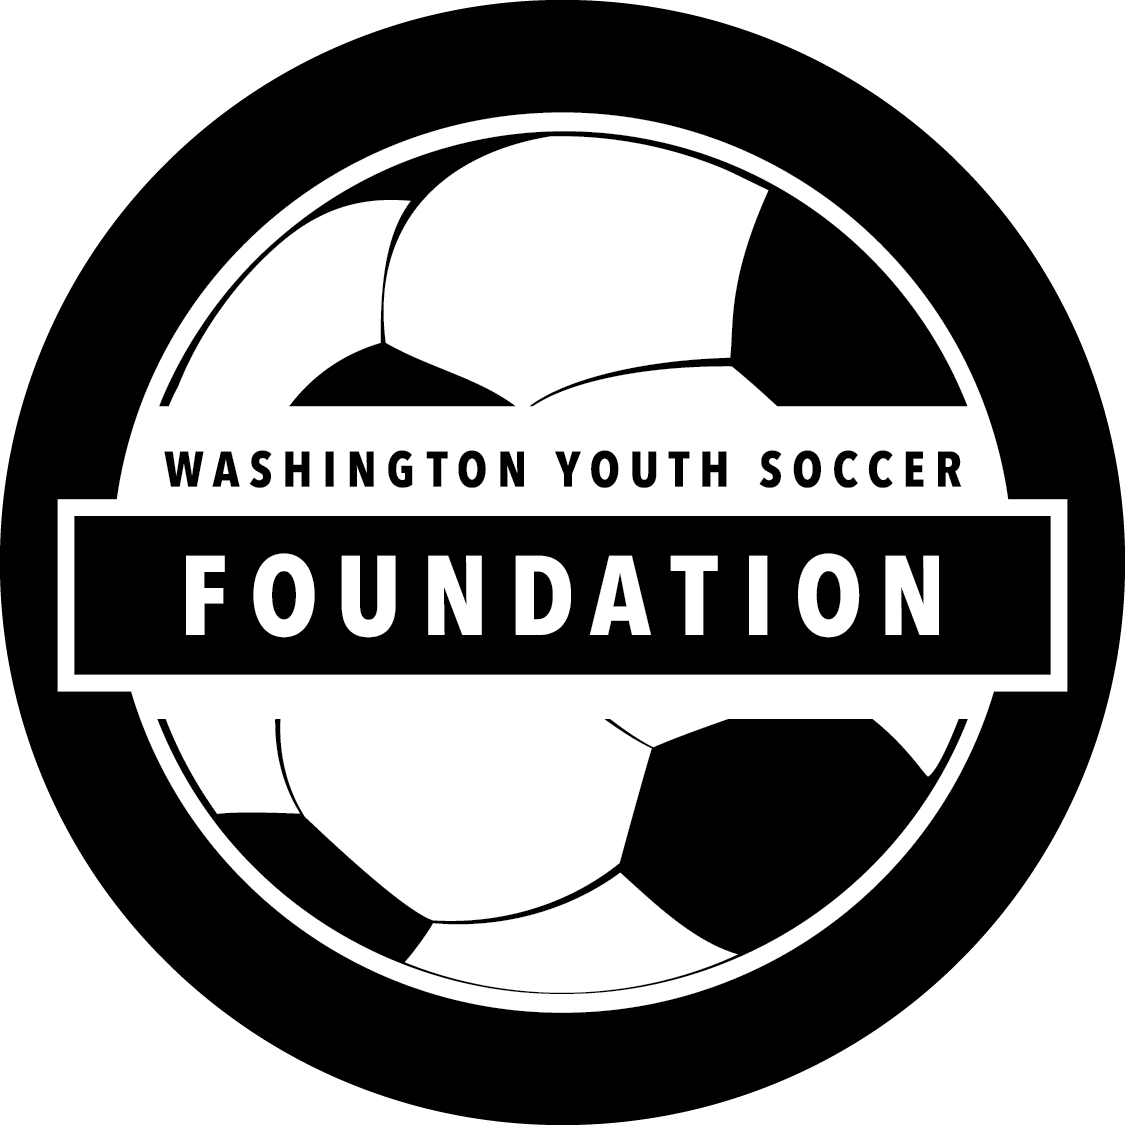 Washington Youth Soccer Foundation